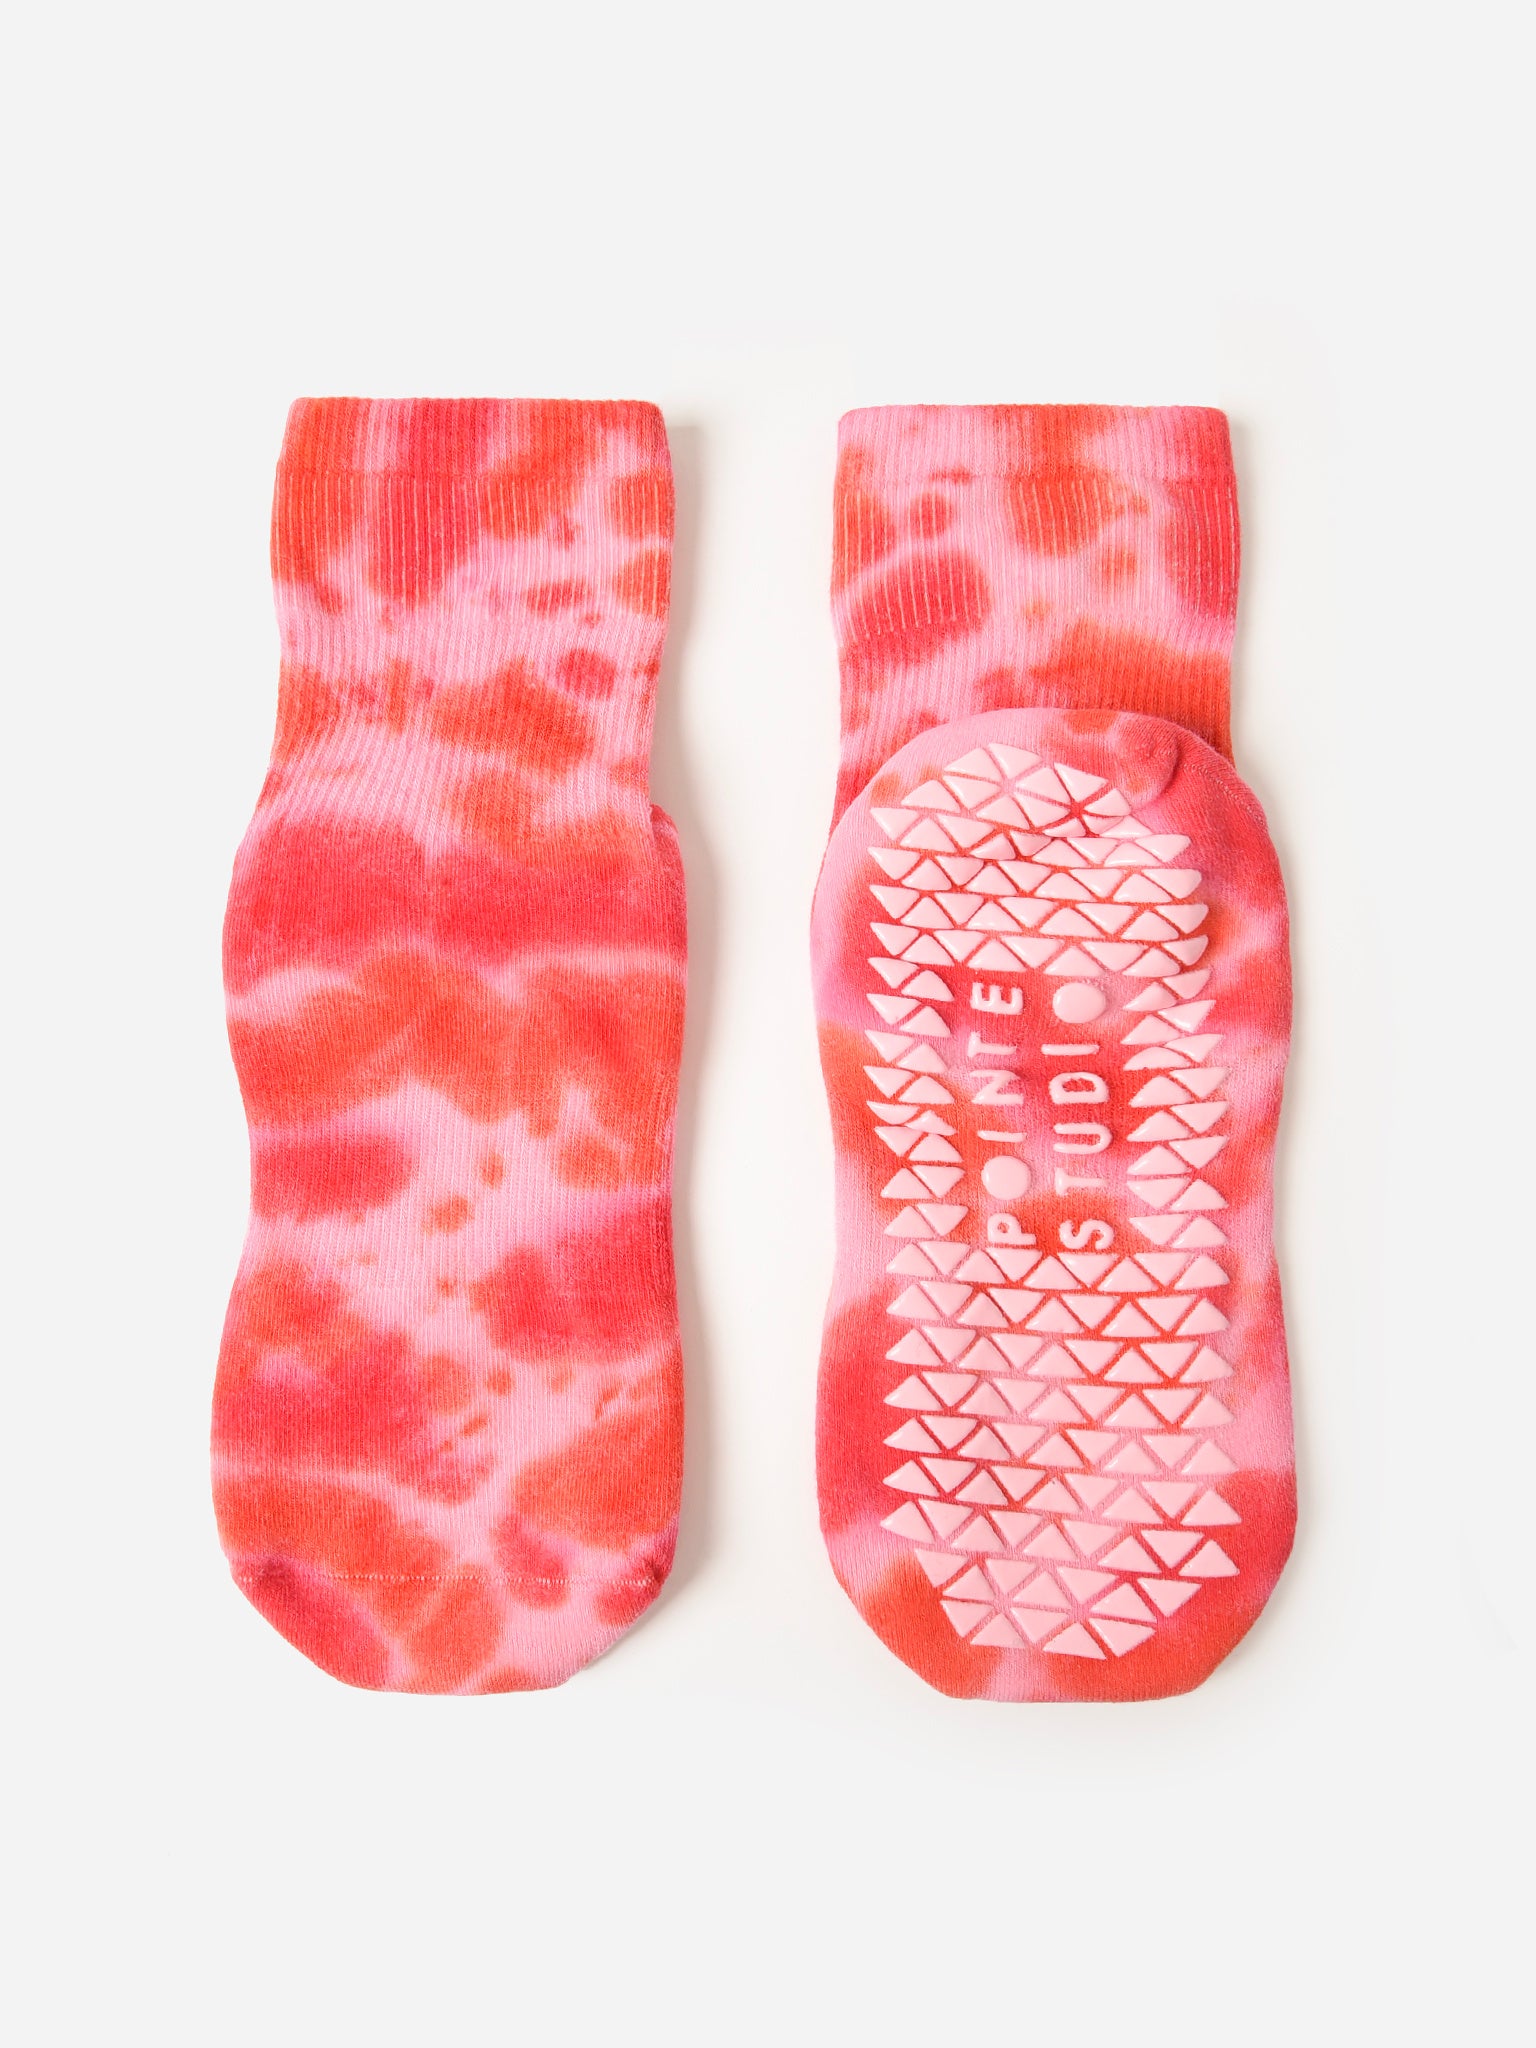 Vive Non-Slip Grip Socks (6 Pairs) - Hospital Slipper Socks for